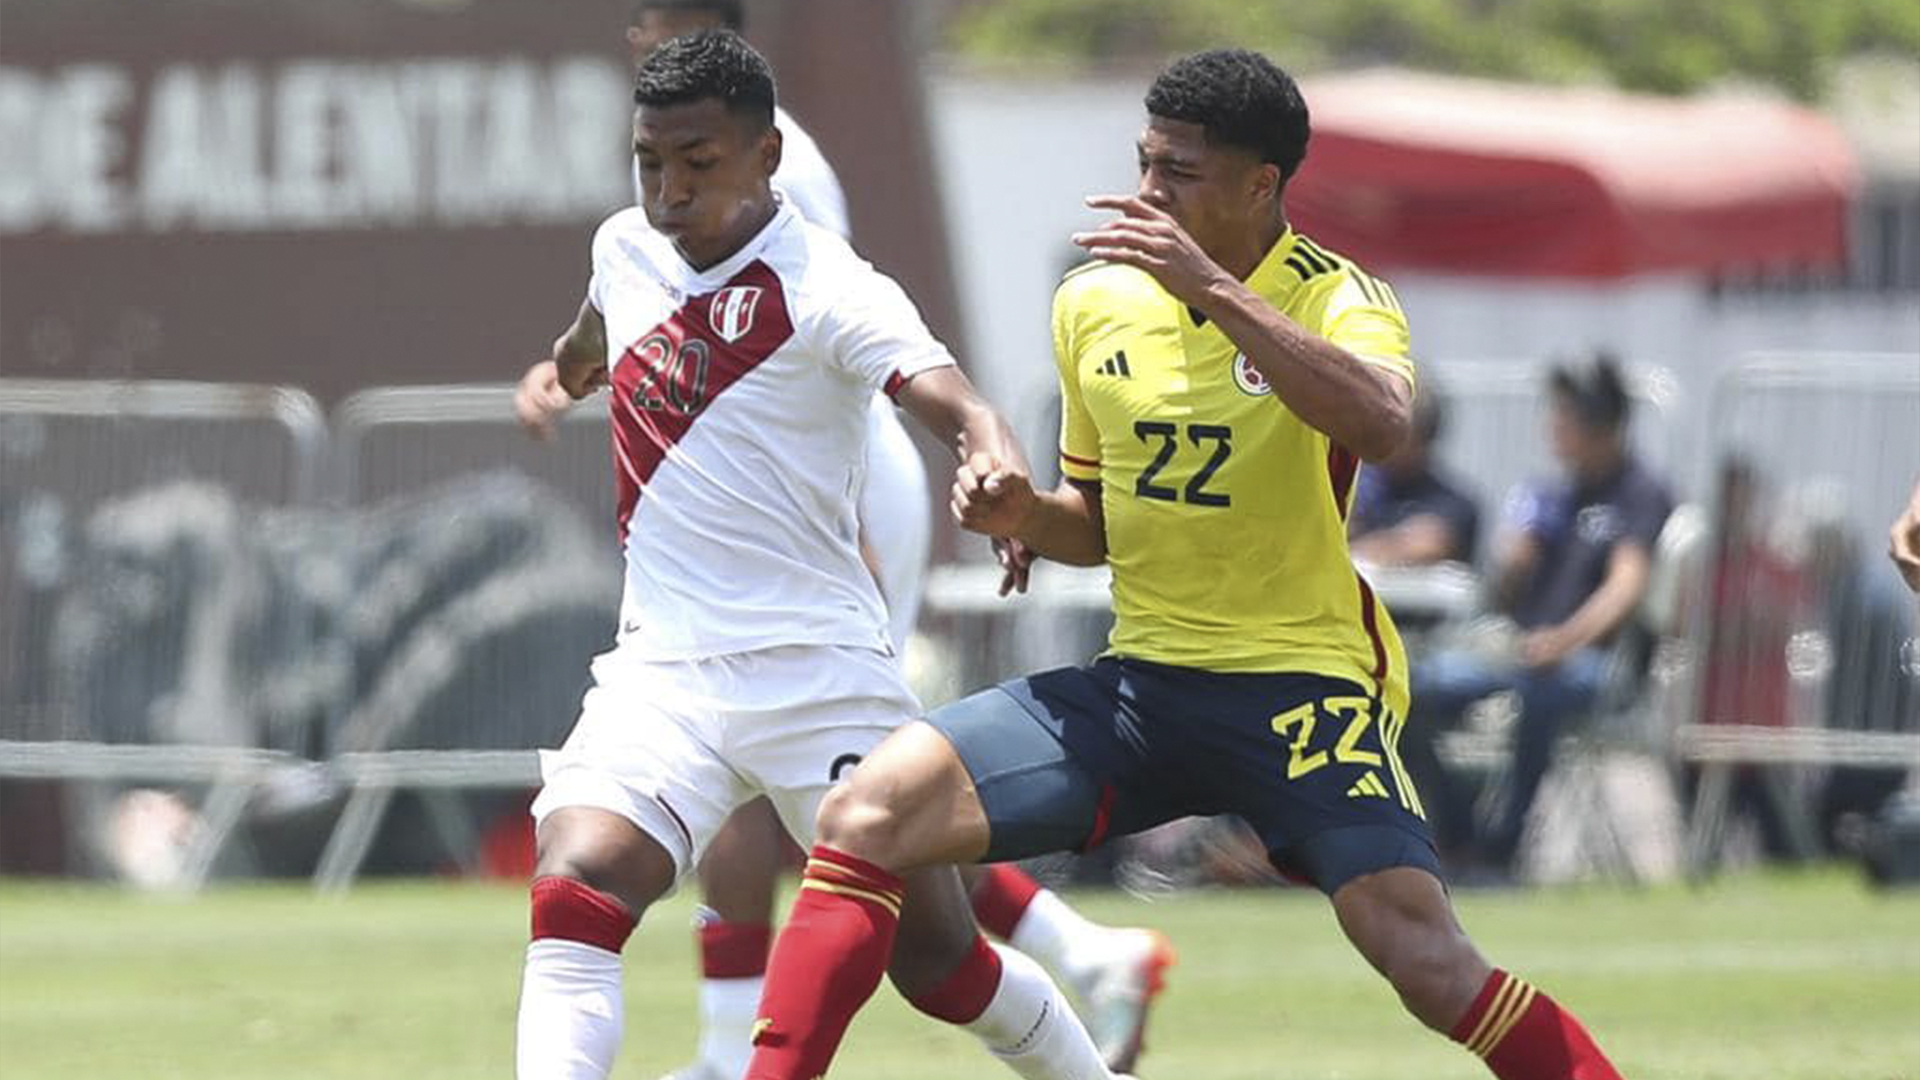 Perú y Colombia salen en búsqueda de su primer triunfo en el Sudamericano sub 20. (FPF)